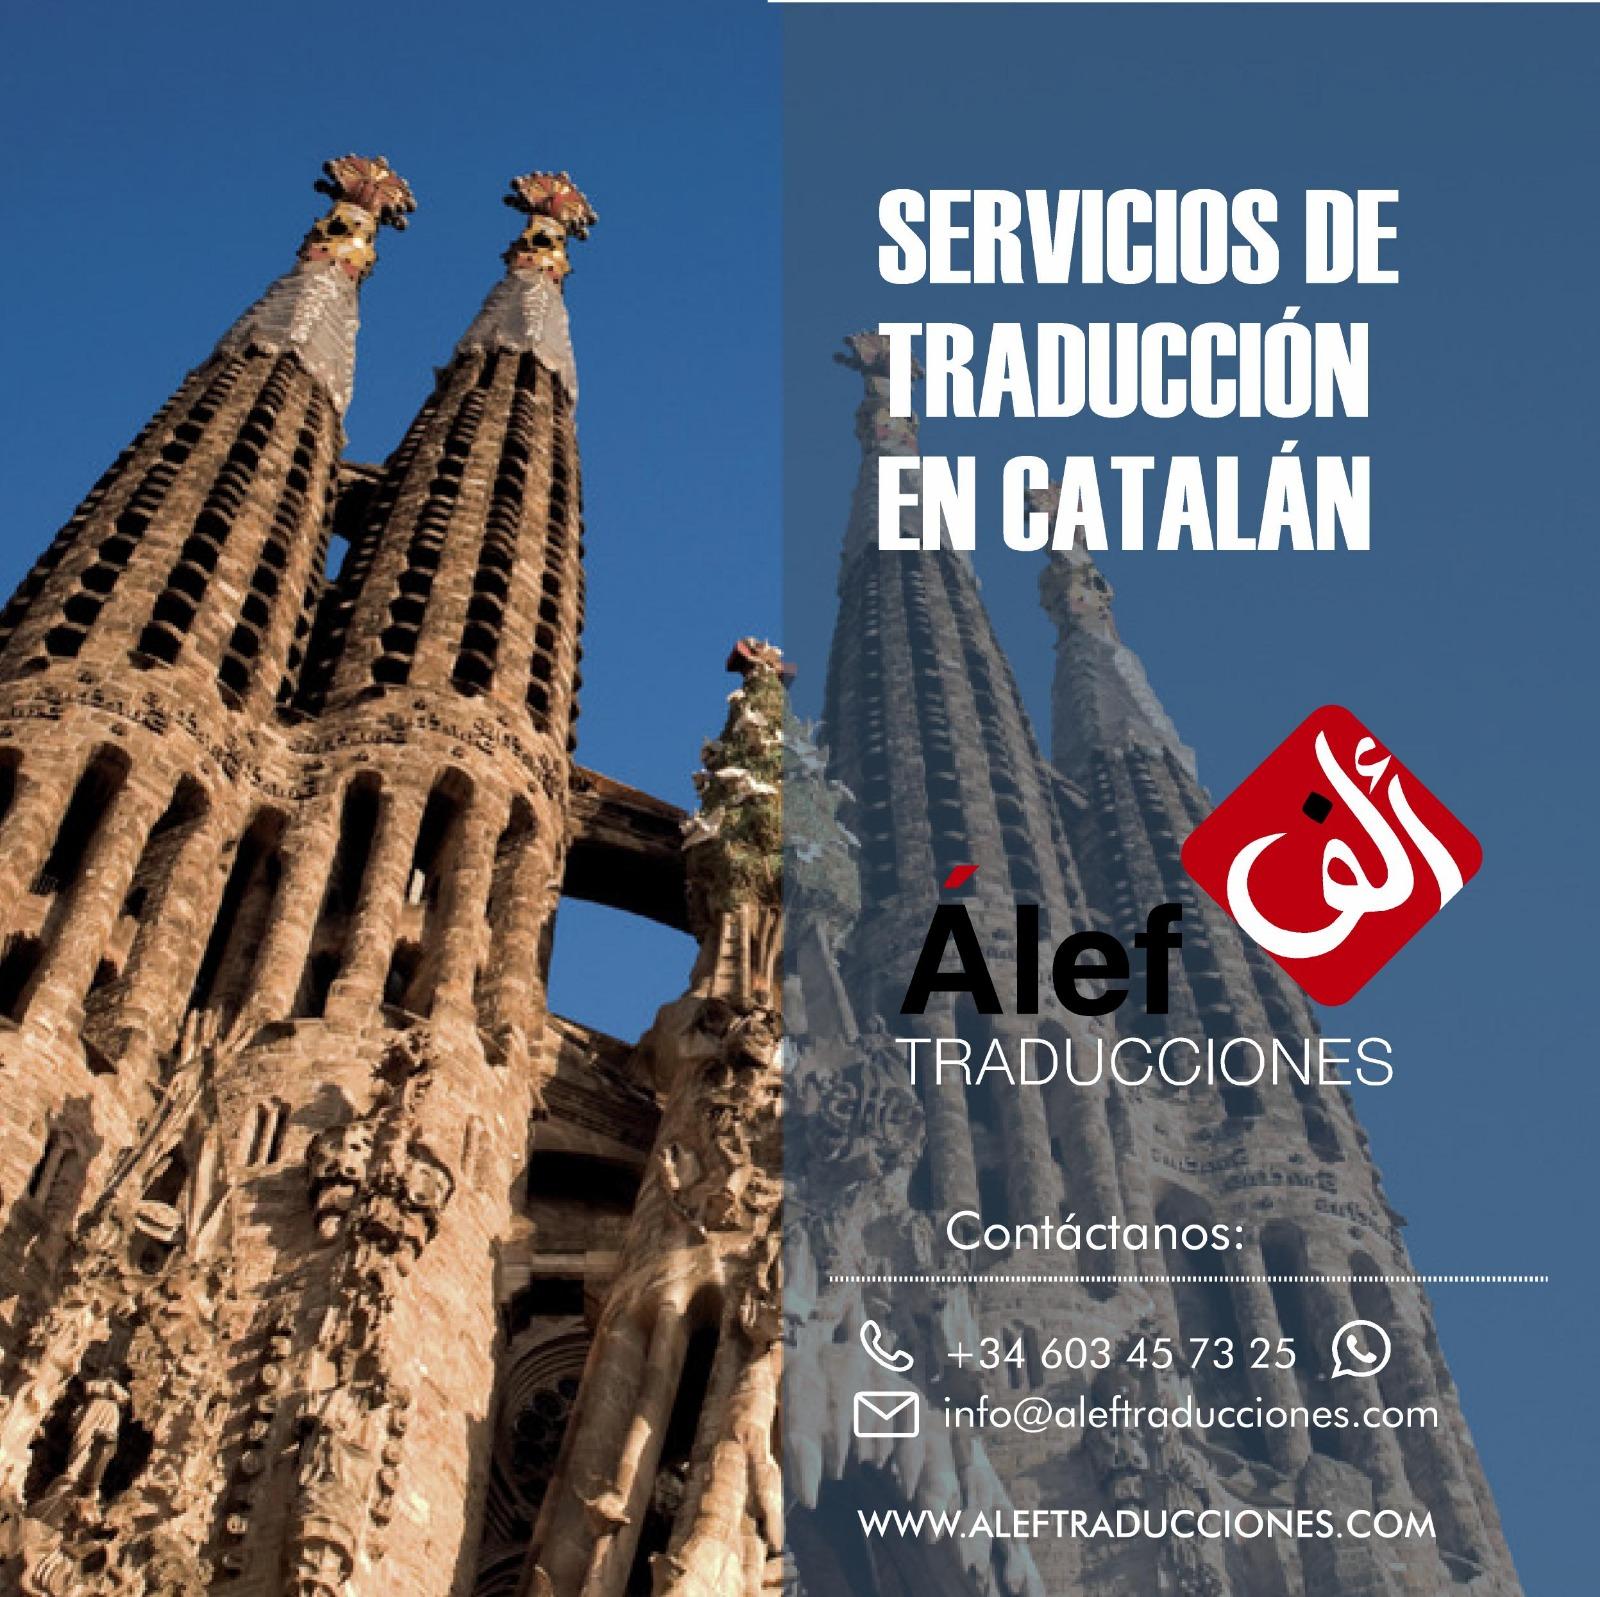 Milanuncios - TraducciÓn jurada catalÁn-espaÑol